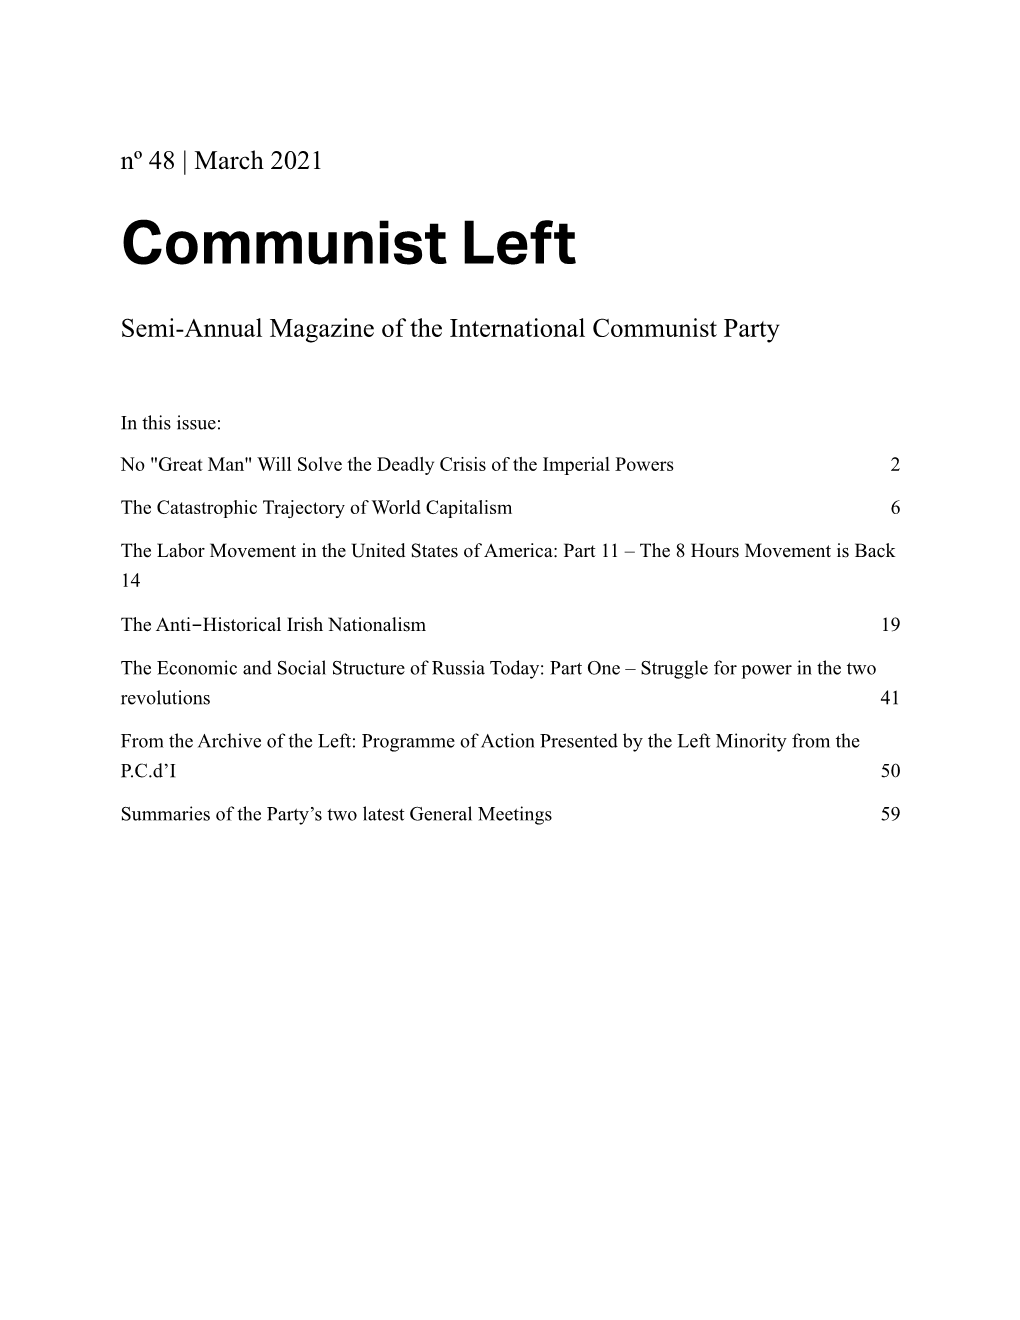 Communist Left